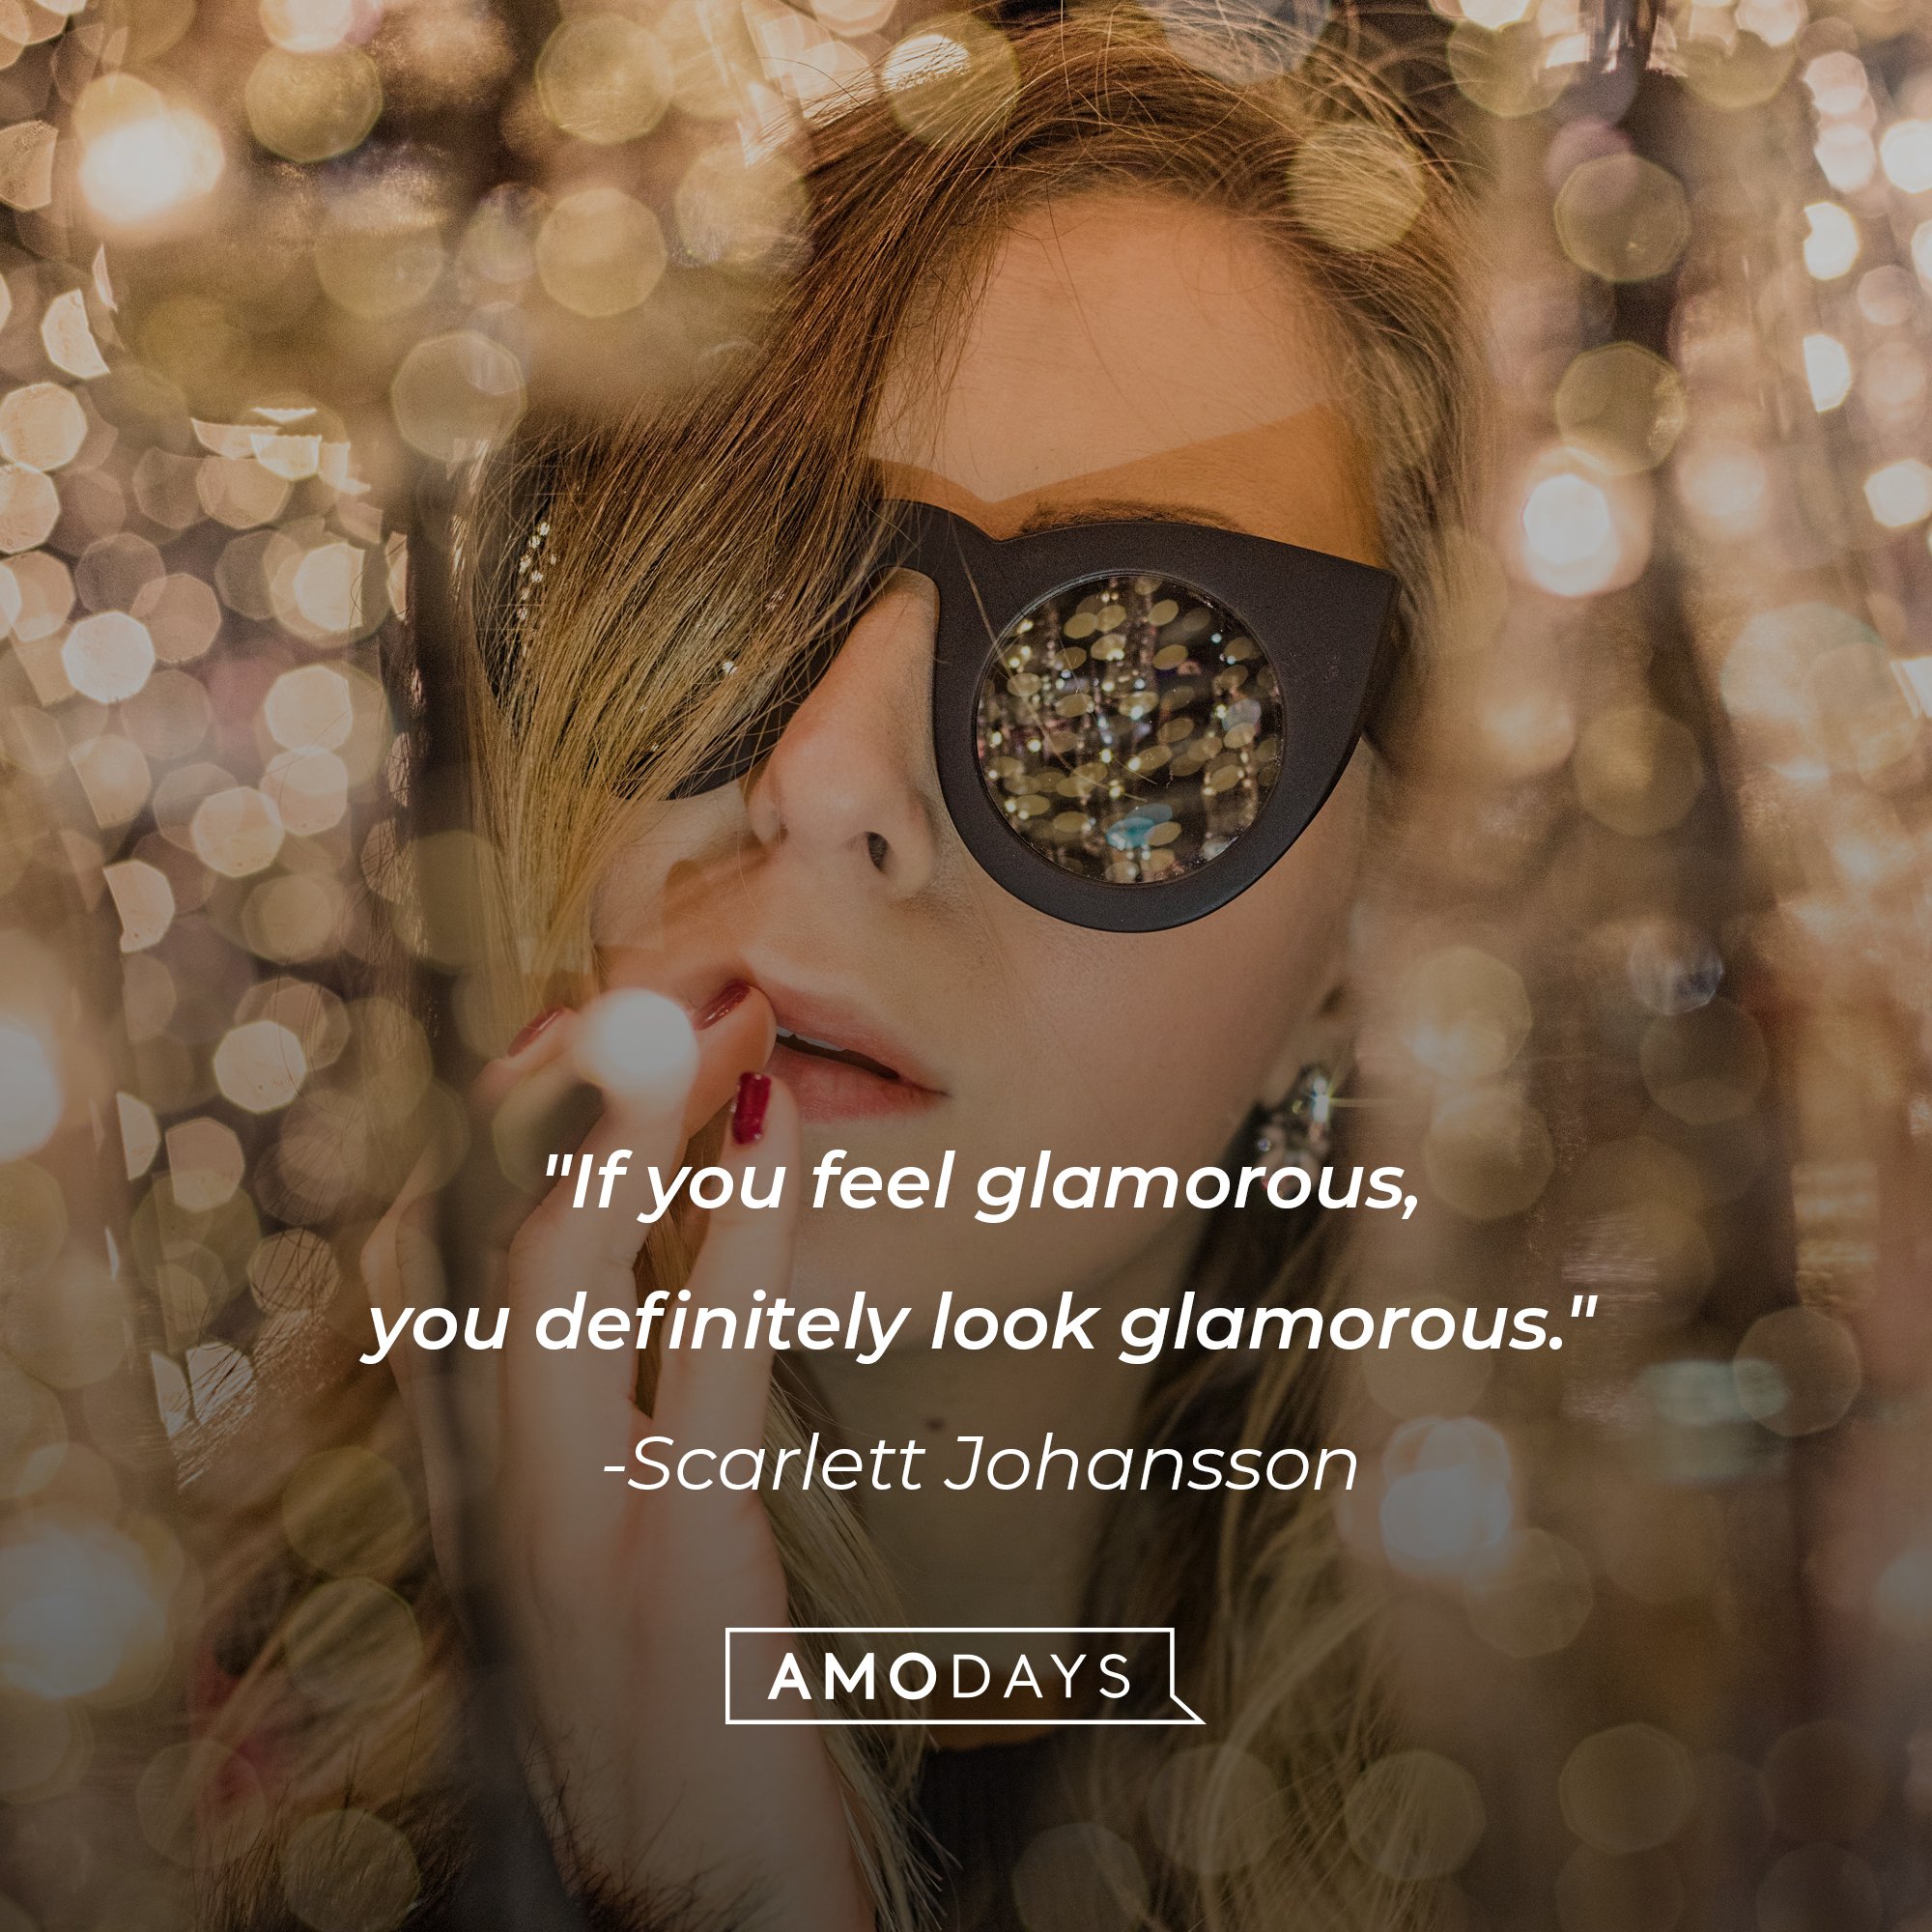 Scarlett Johansson's quote: "If you feel glamorous, you definitely look glamorous." | Image: AmoDays